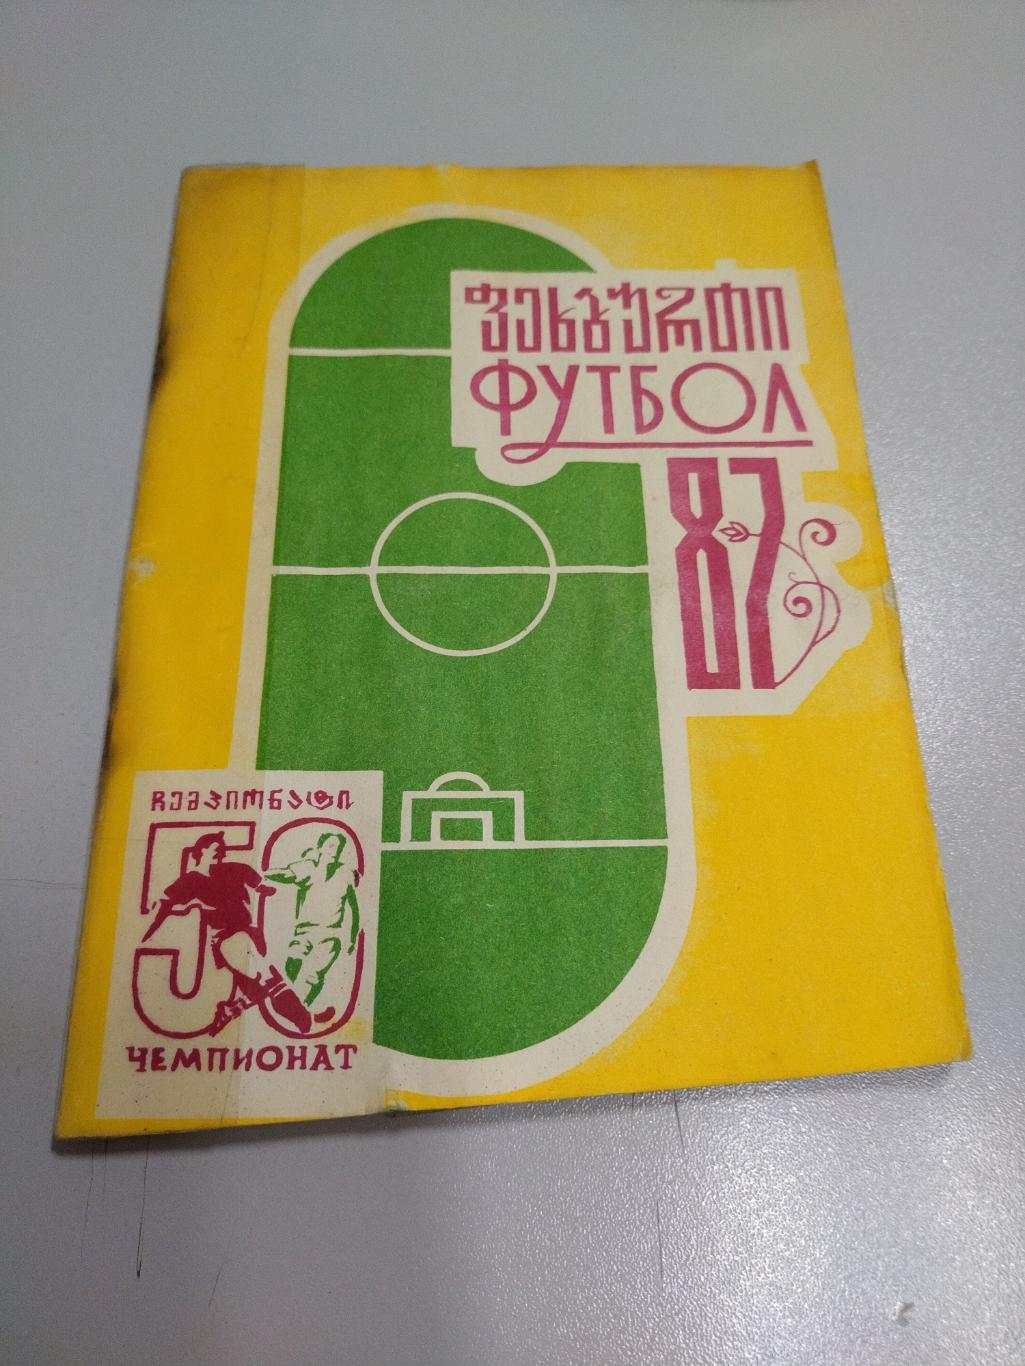 Календарь справочник футбол Гурия(Ланчхути)1987